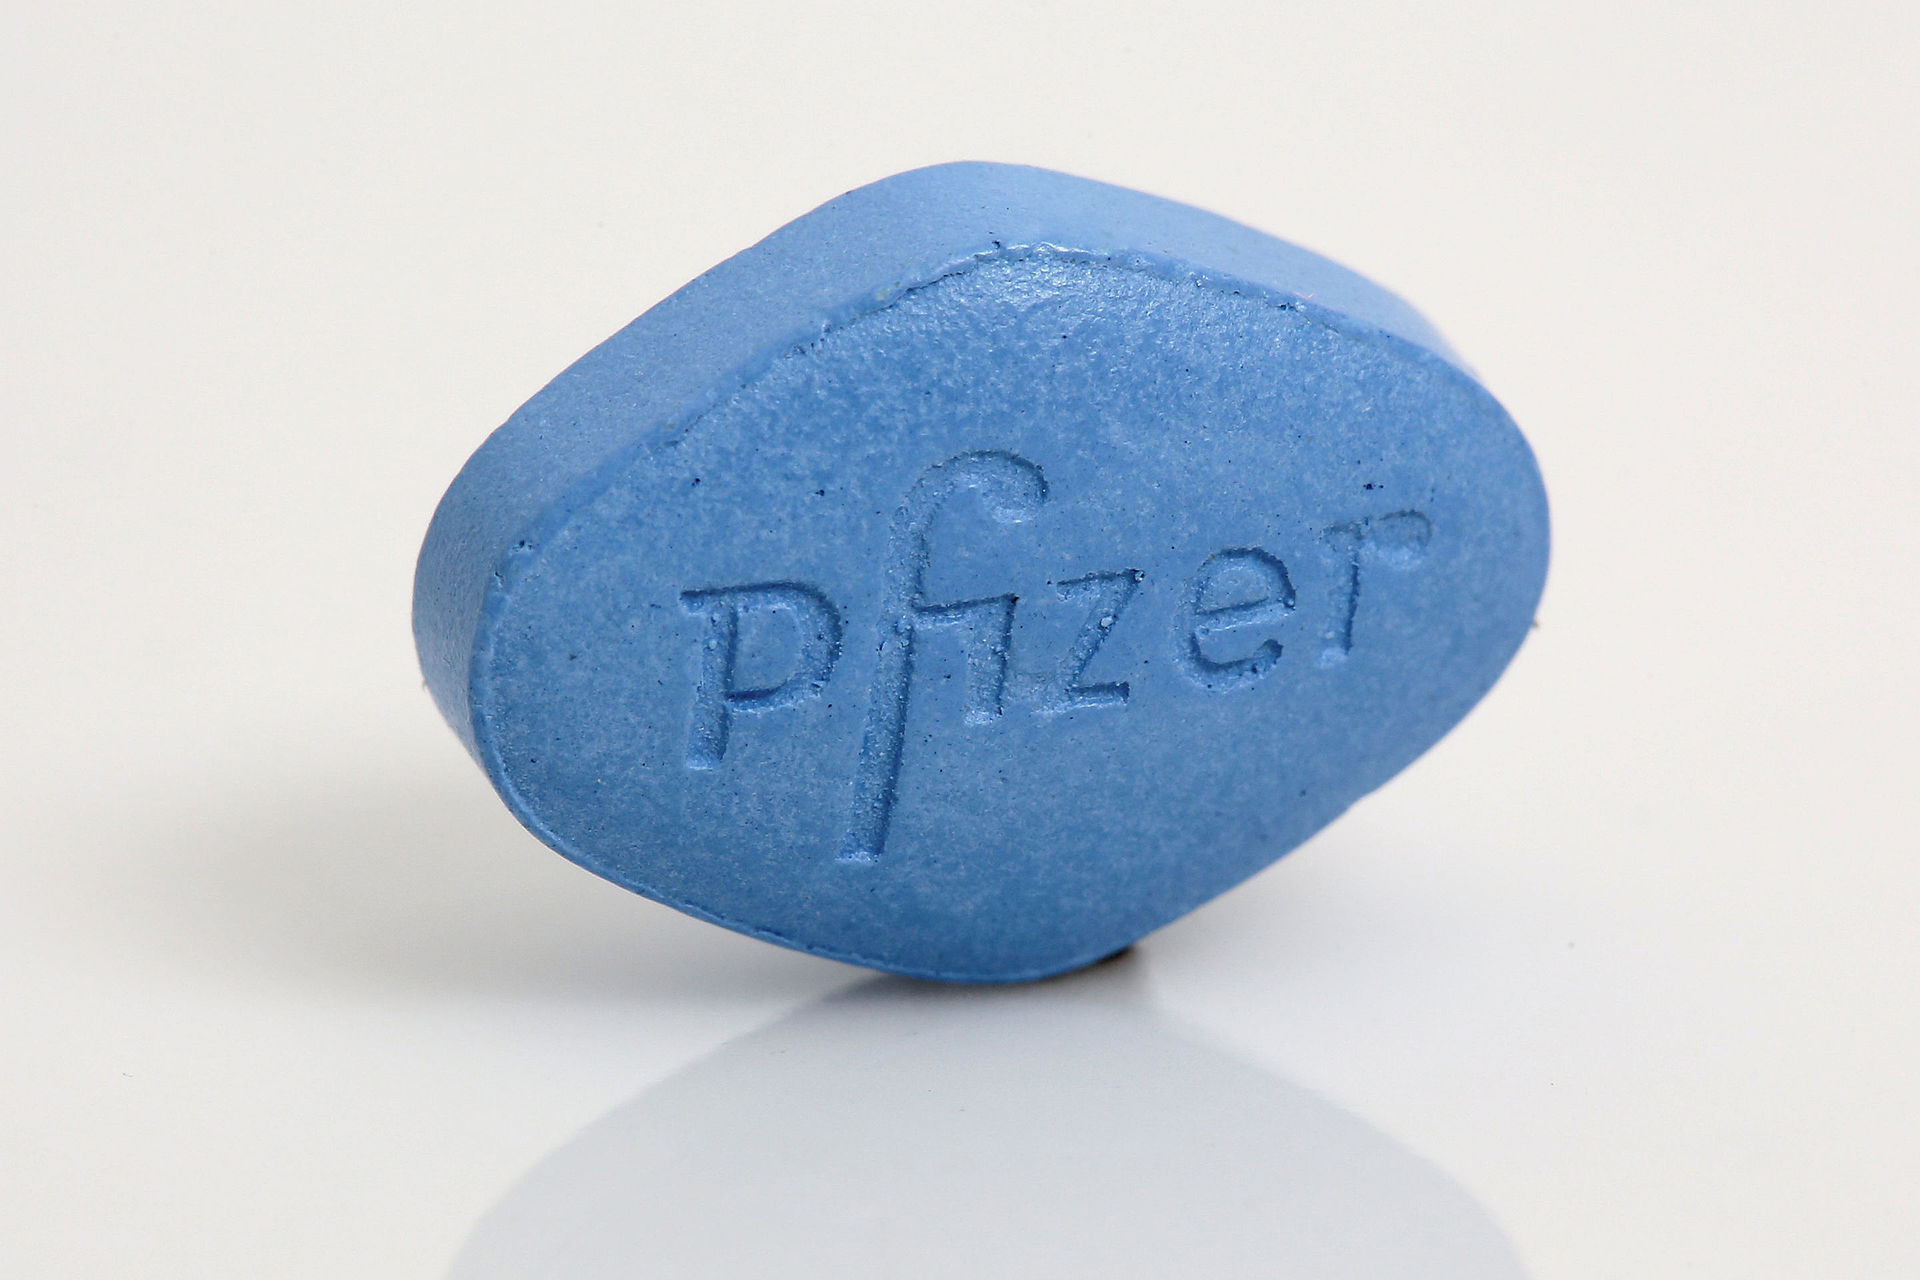 La pillola blu originale – Viagra di Pfizer